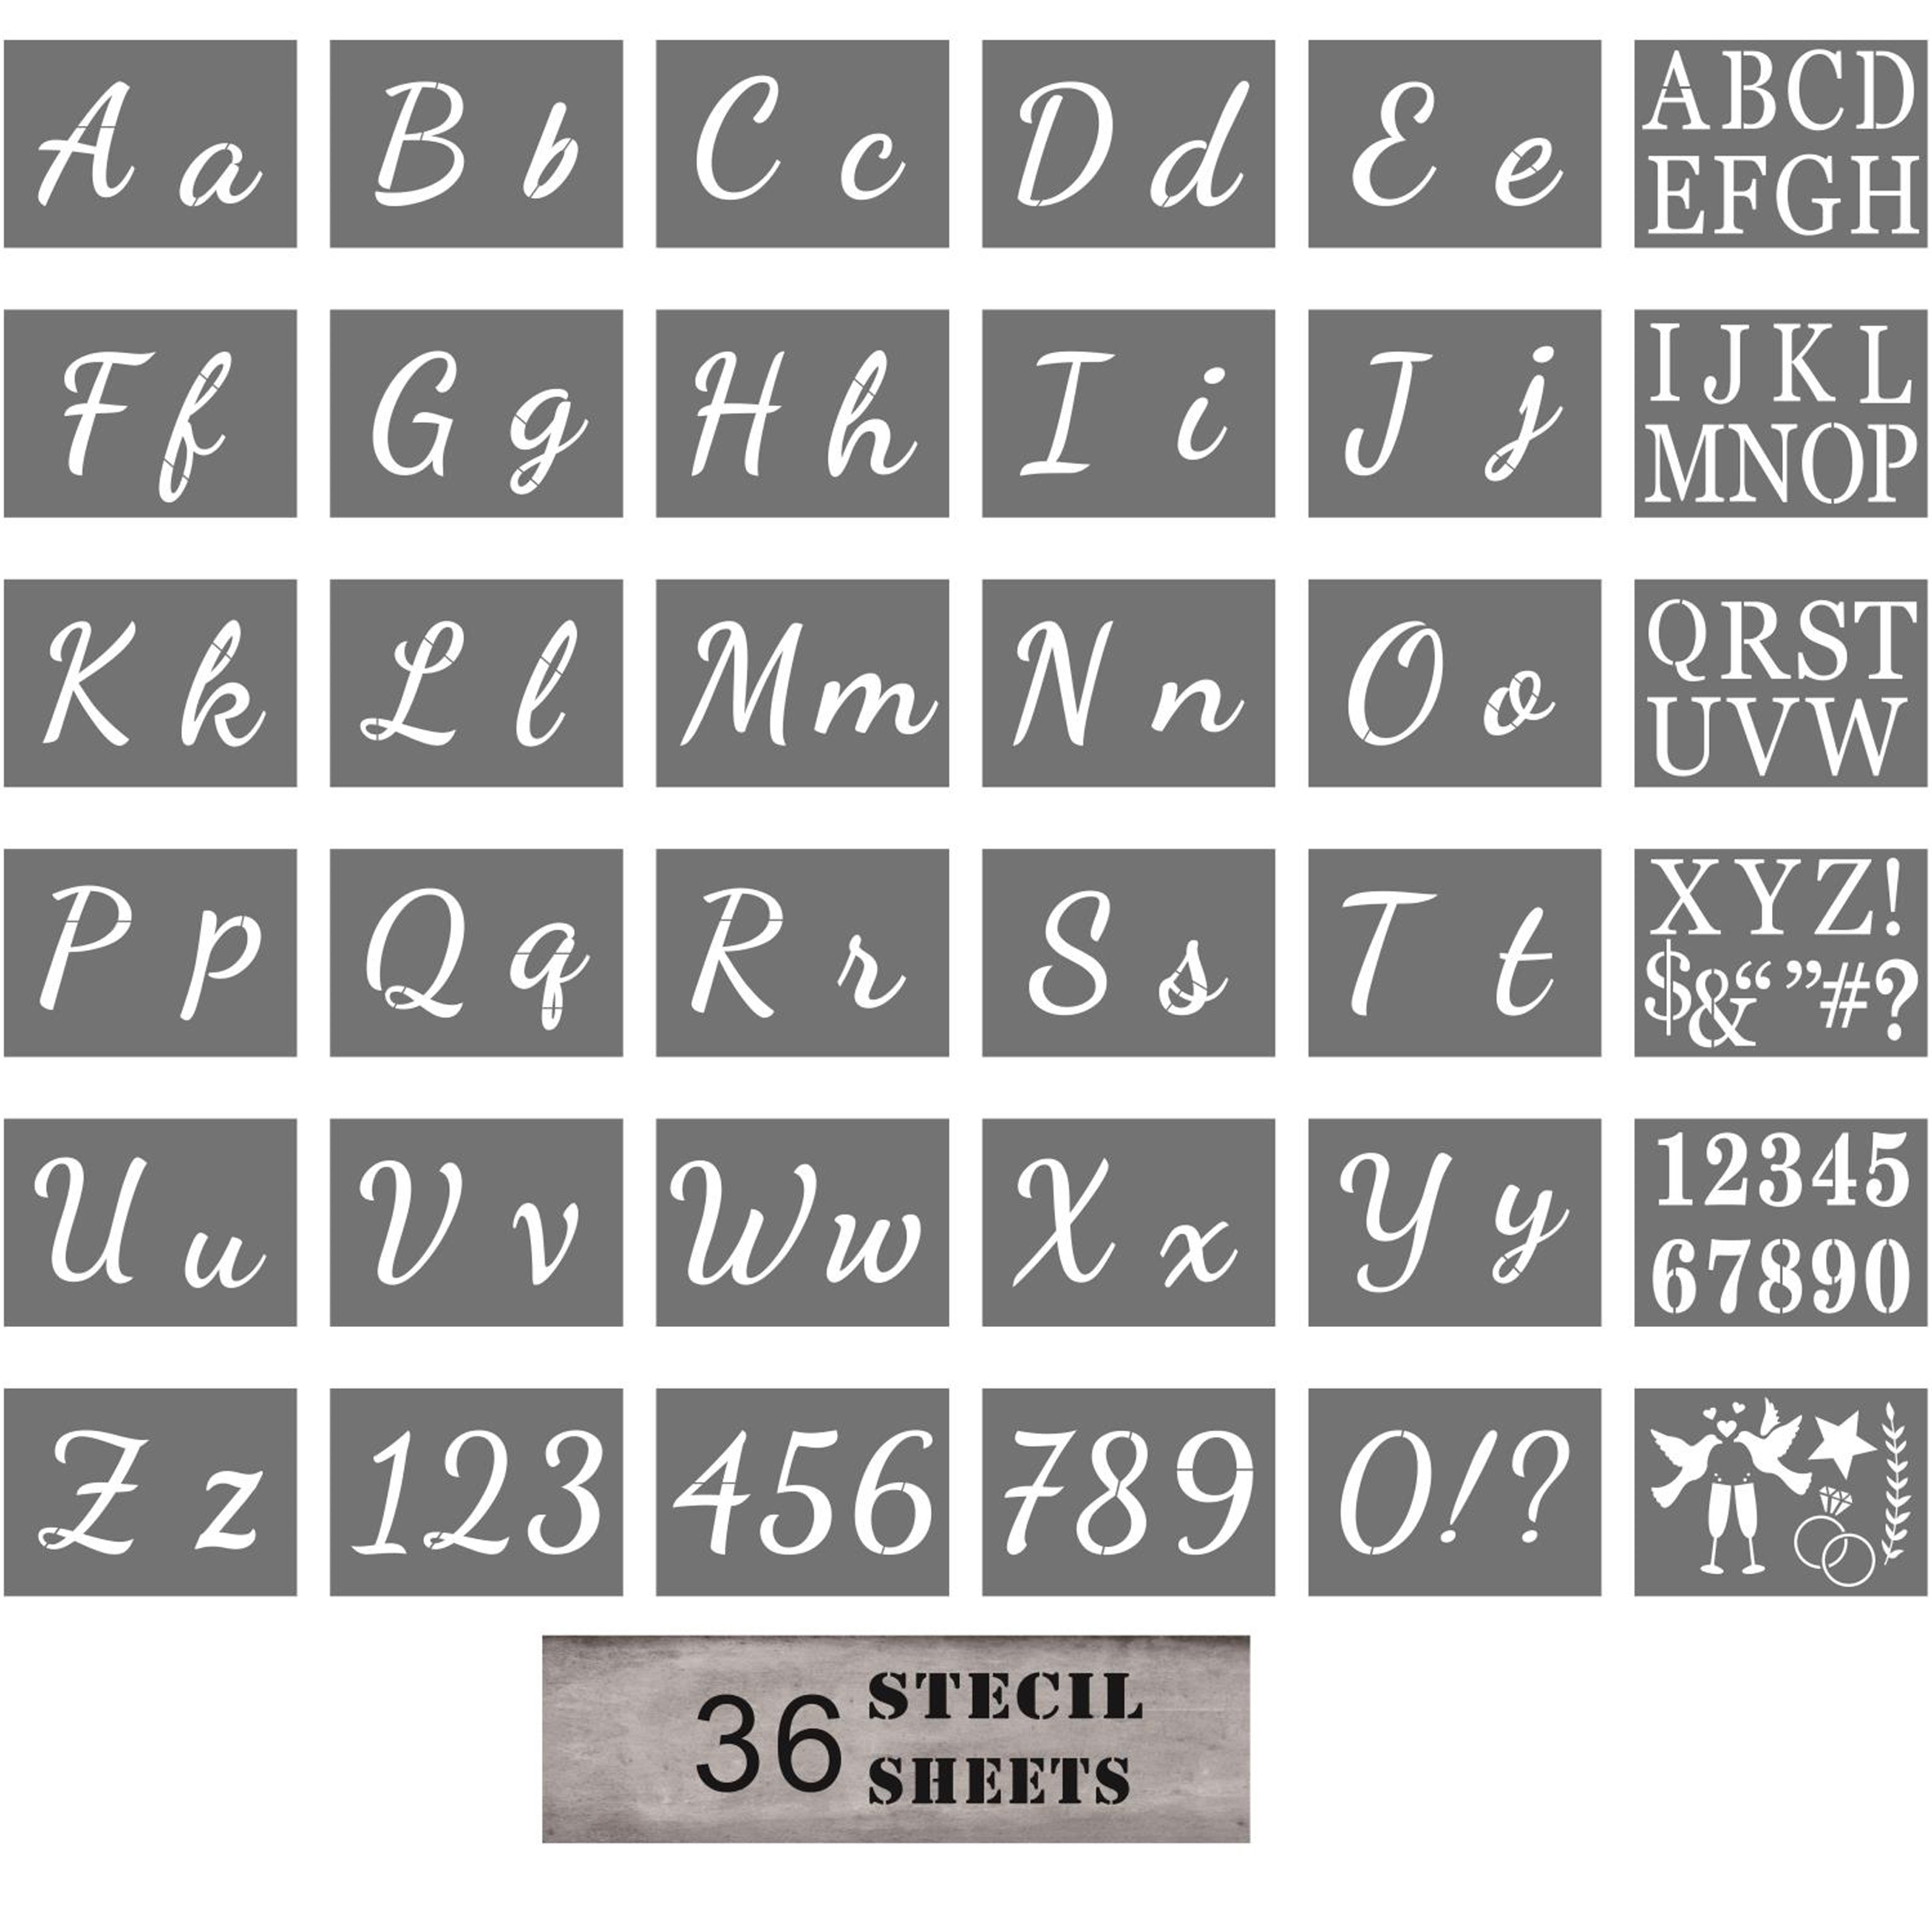 10 Uds plantillas de alfabeto reutilizables juego de plantillas de pintura de  letras para dibujar en madera, azulejo de pared de , proyectos de Baoblaze Plantilla  de pintura de letras